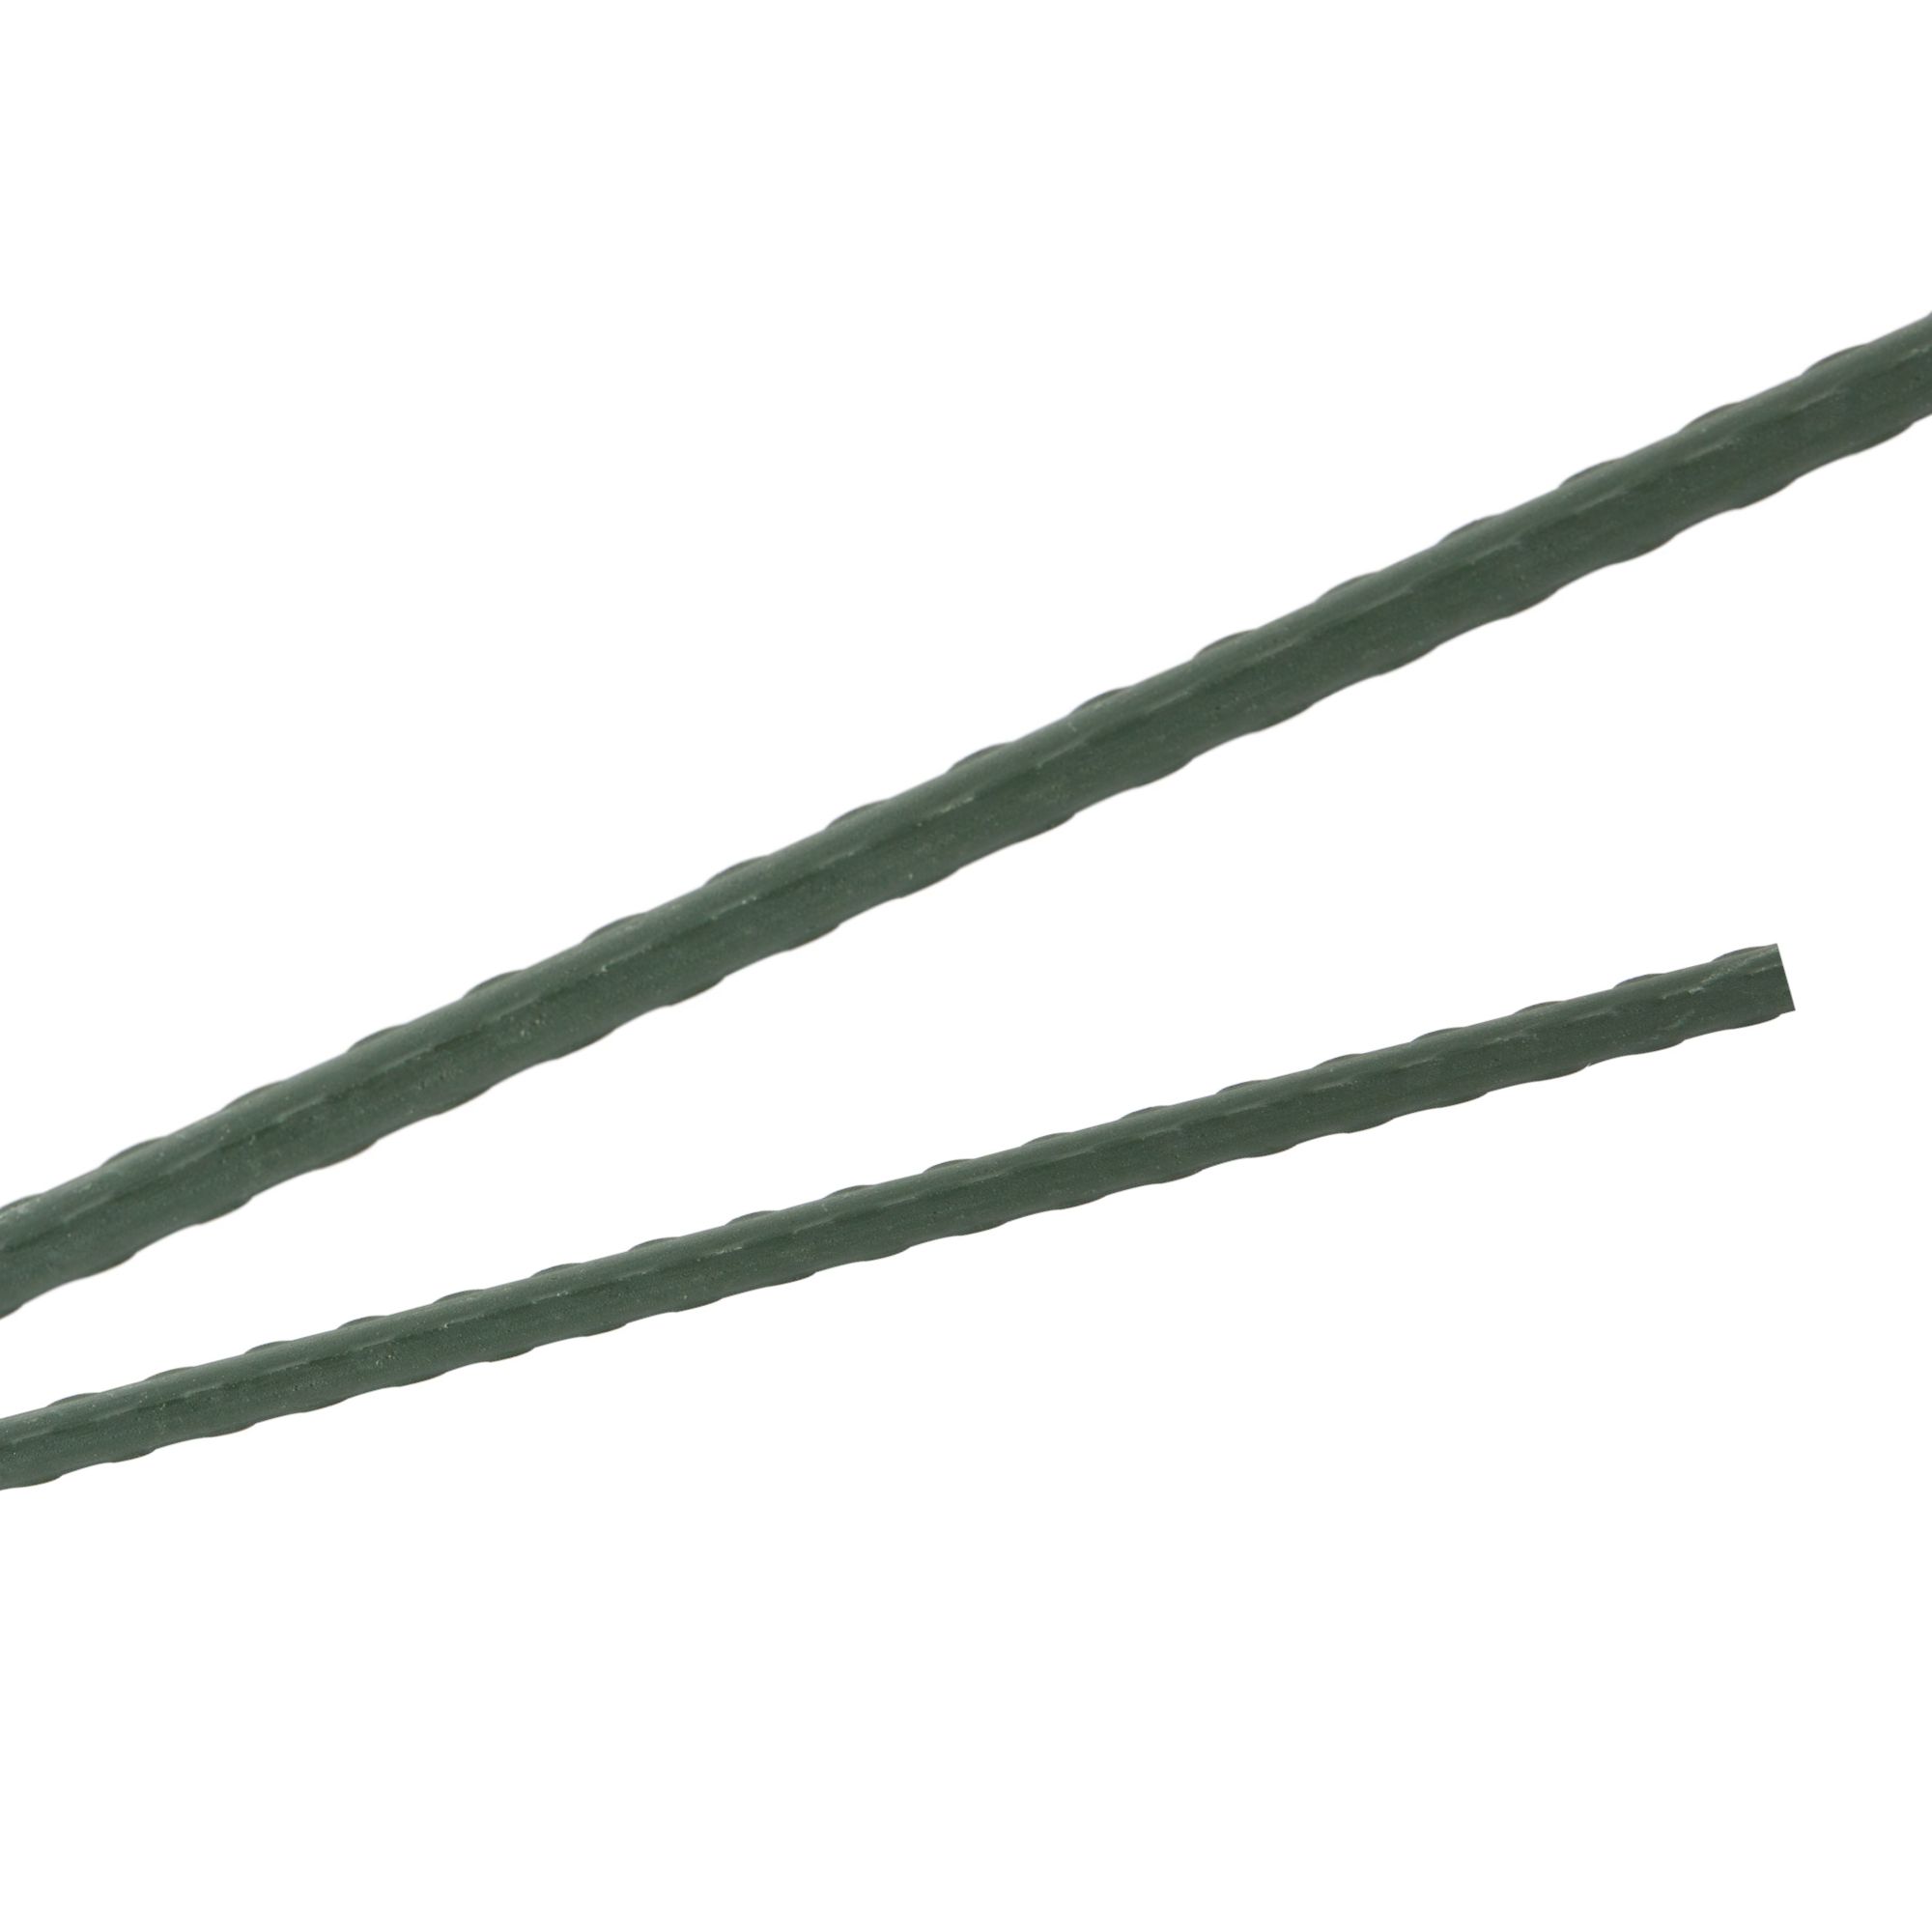 Tyč podpěrná, 8mm, 150cm, kov+PVC, zelená 0.090000 Kg GIGA Sklad20 211777 199